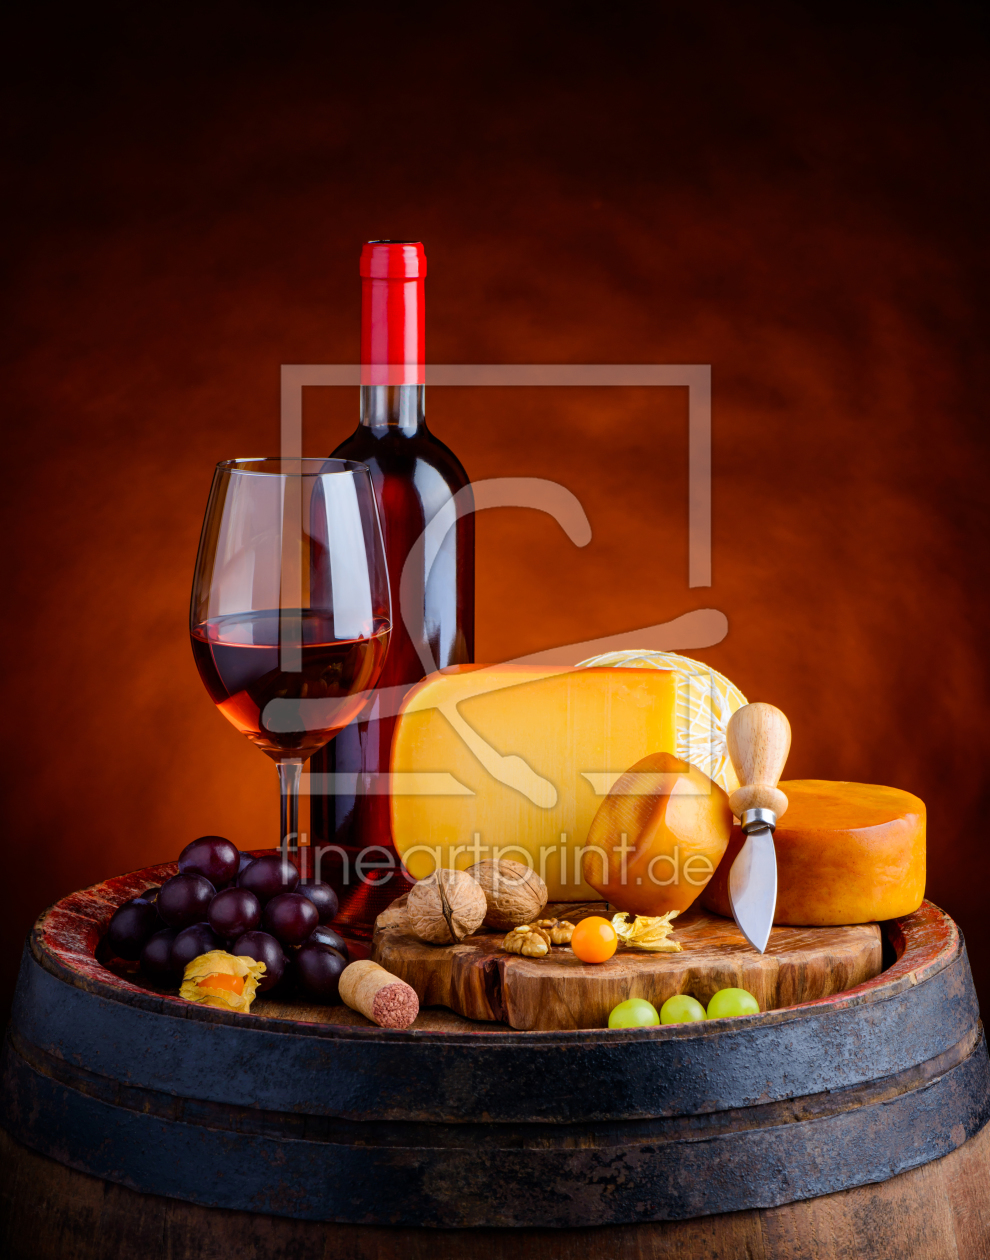 Bild-Nr.: 11916770 Stillleben Rosewein mit Käse im Weinkeller erstellt von xfotostudio